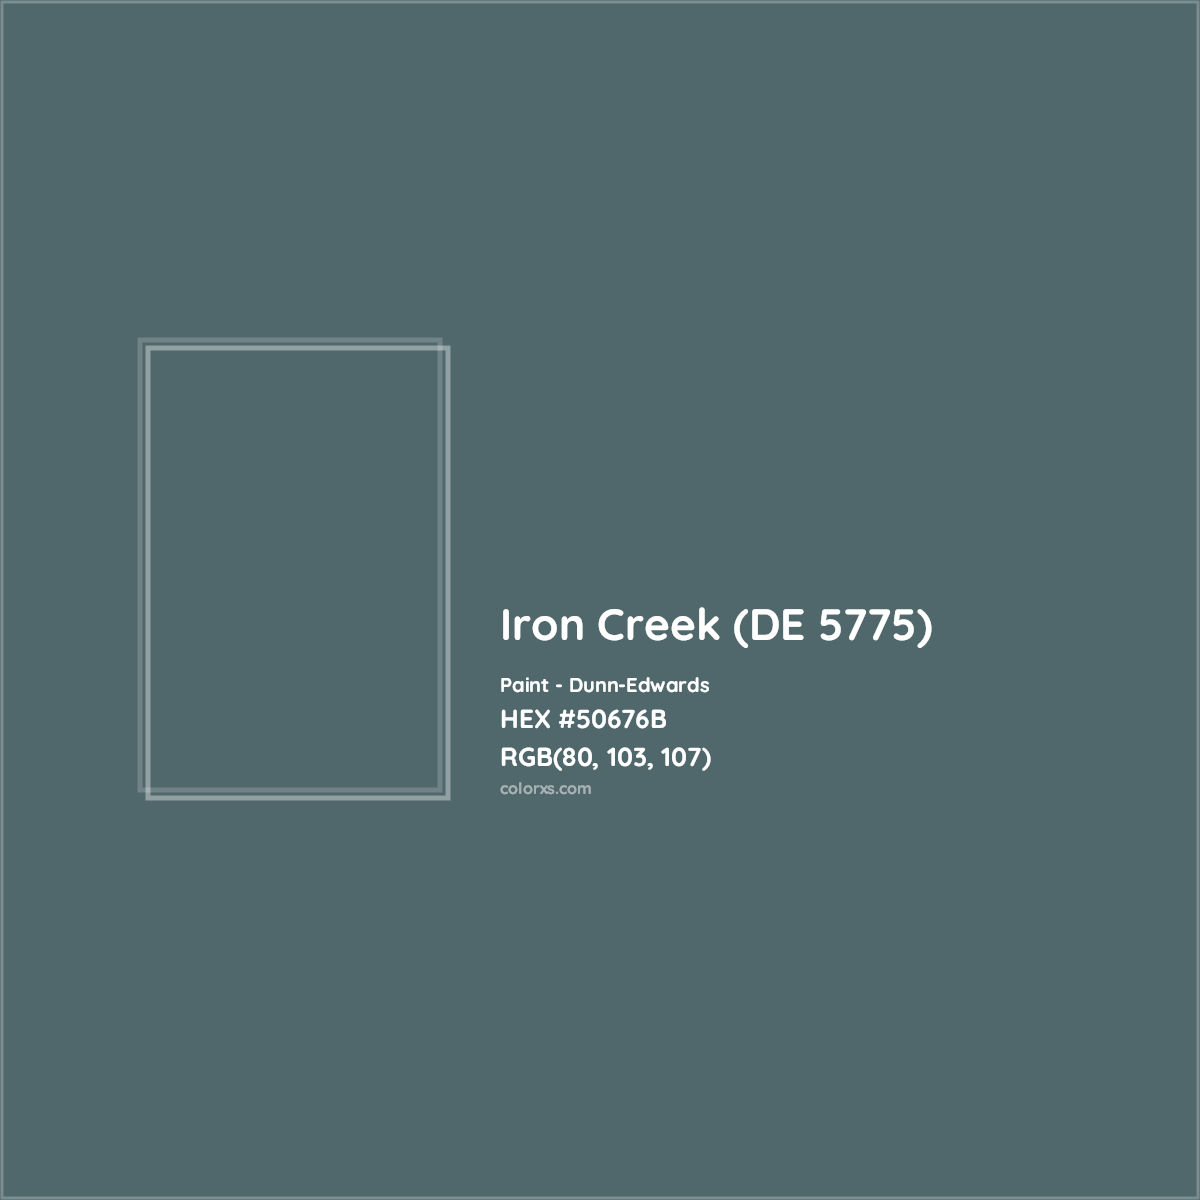 HEX #50676B Iron Creek (DE 5775) Paint Dunn-Edwards - Color Code